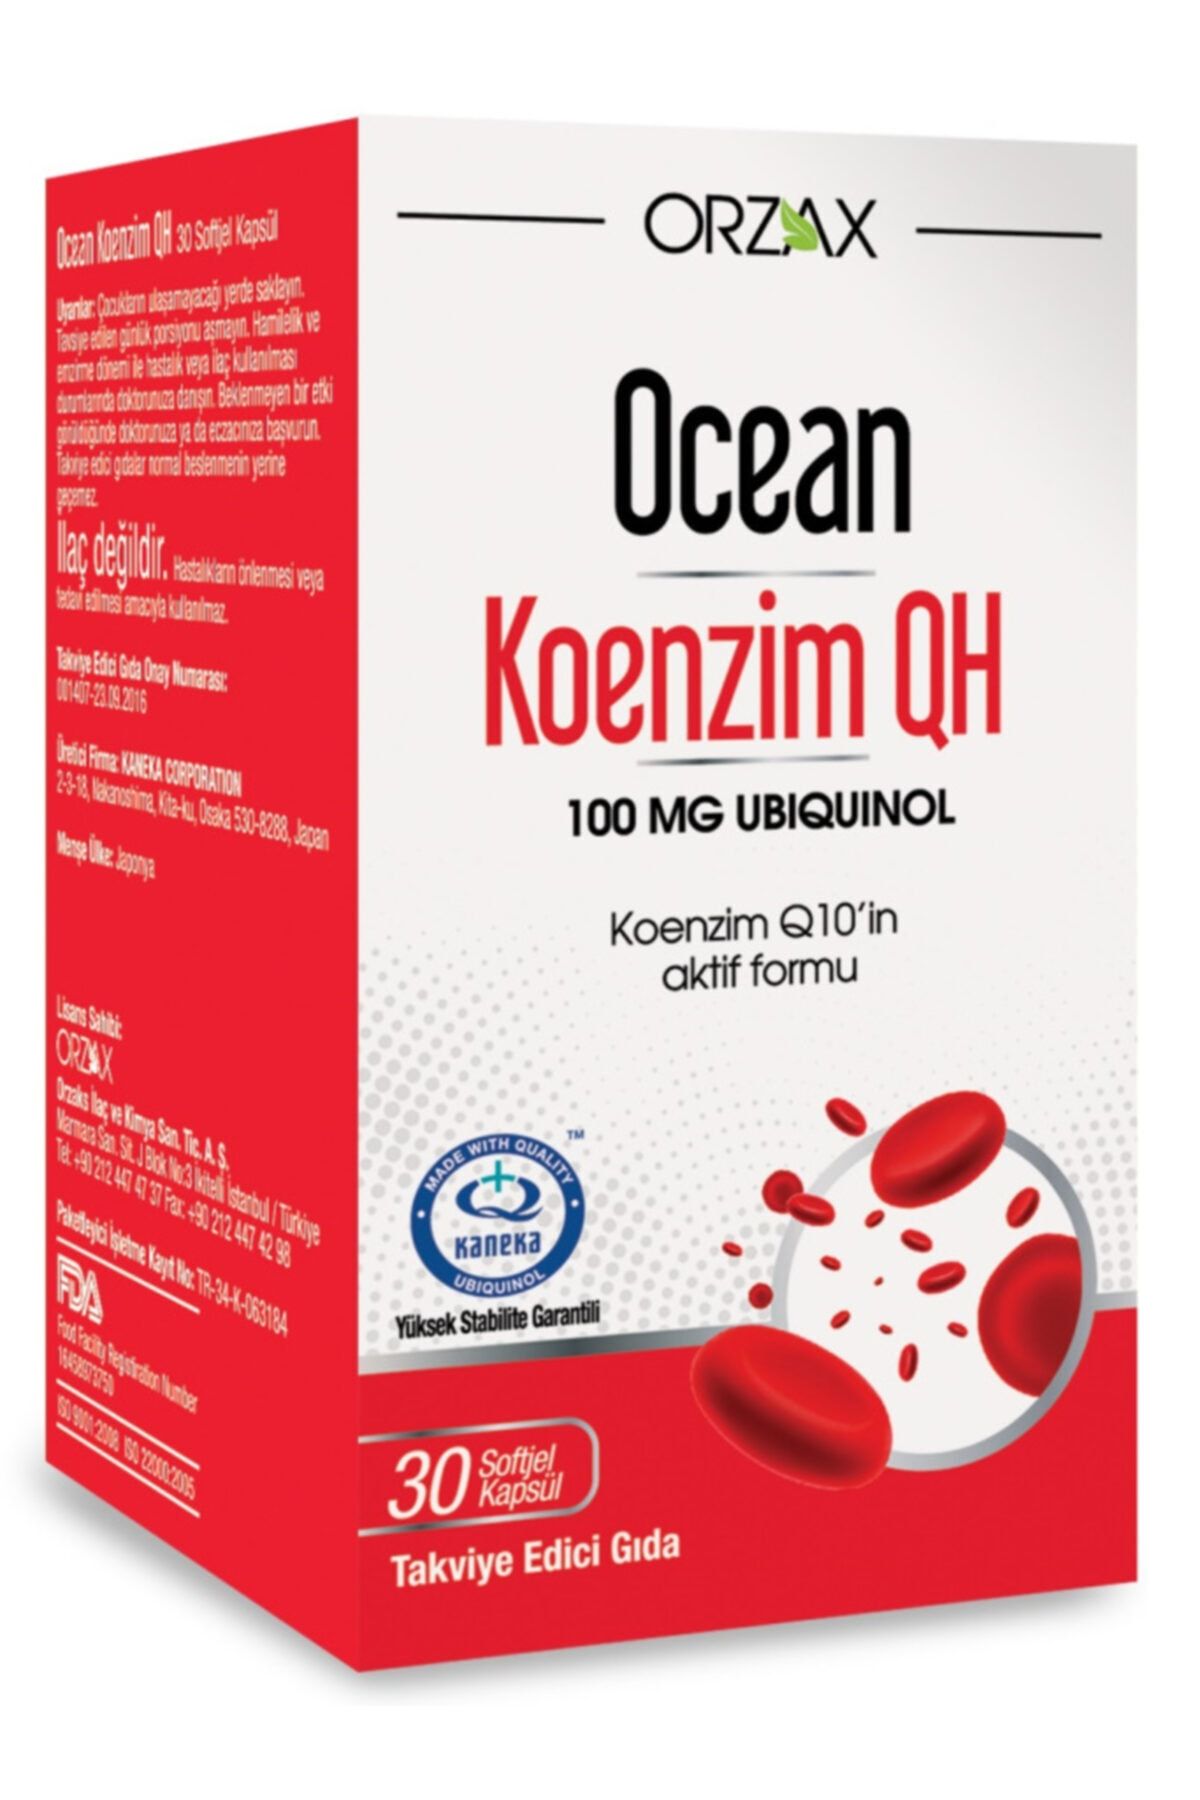 Ocean Ocean Koenzim Qh 100 mg 30 kapsül